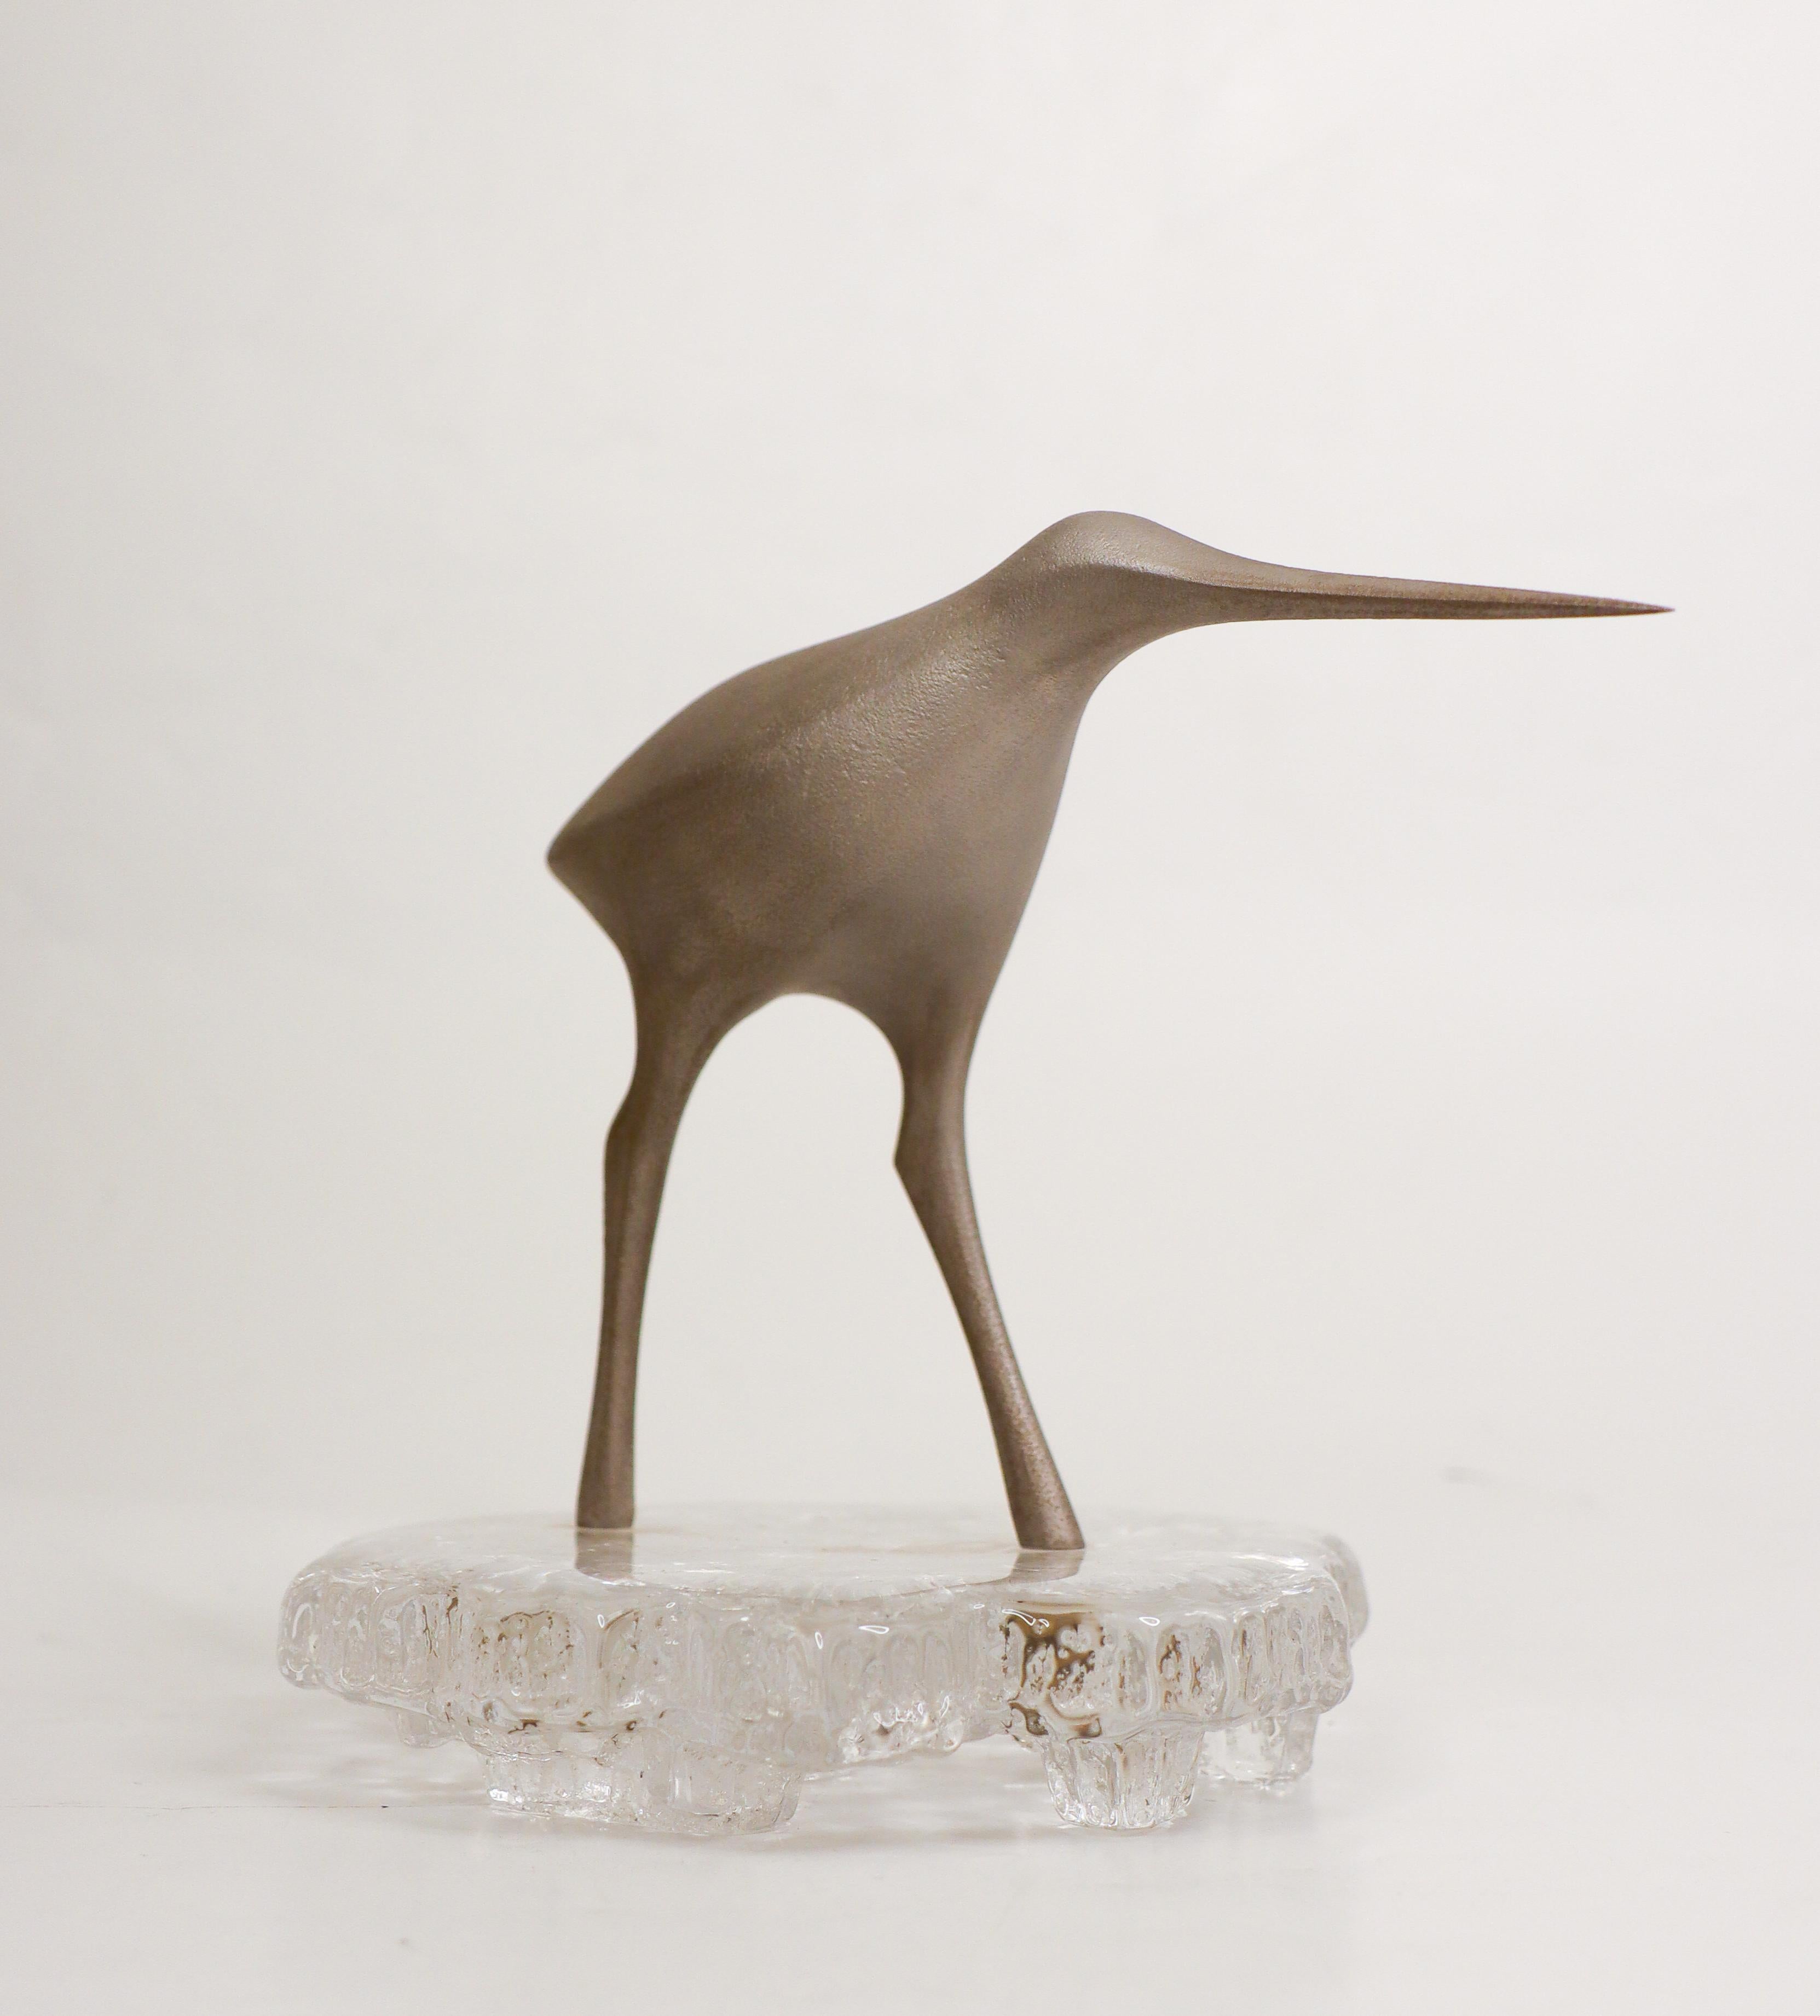 Une belle sculpture d'oiseau de Tapio Wirkkala. Il est fabriqué en métal avec une base en verre. Il mesure 15,5 cm de haut et environ 13,5 cm de diamètre à la base. La partie métallique est estampillée et la base en verre est signée en dessous. Elle